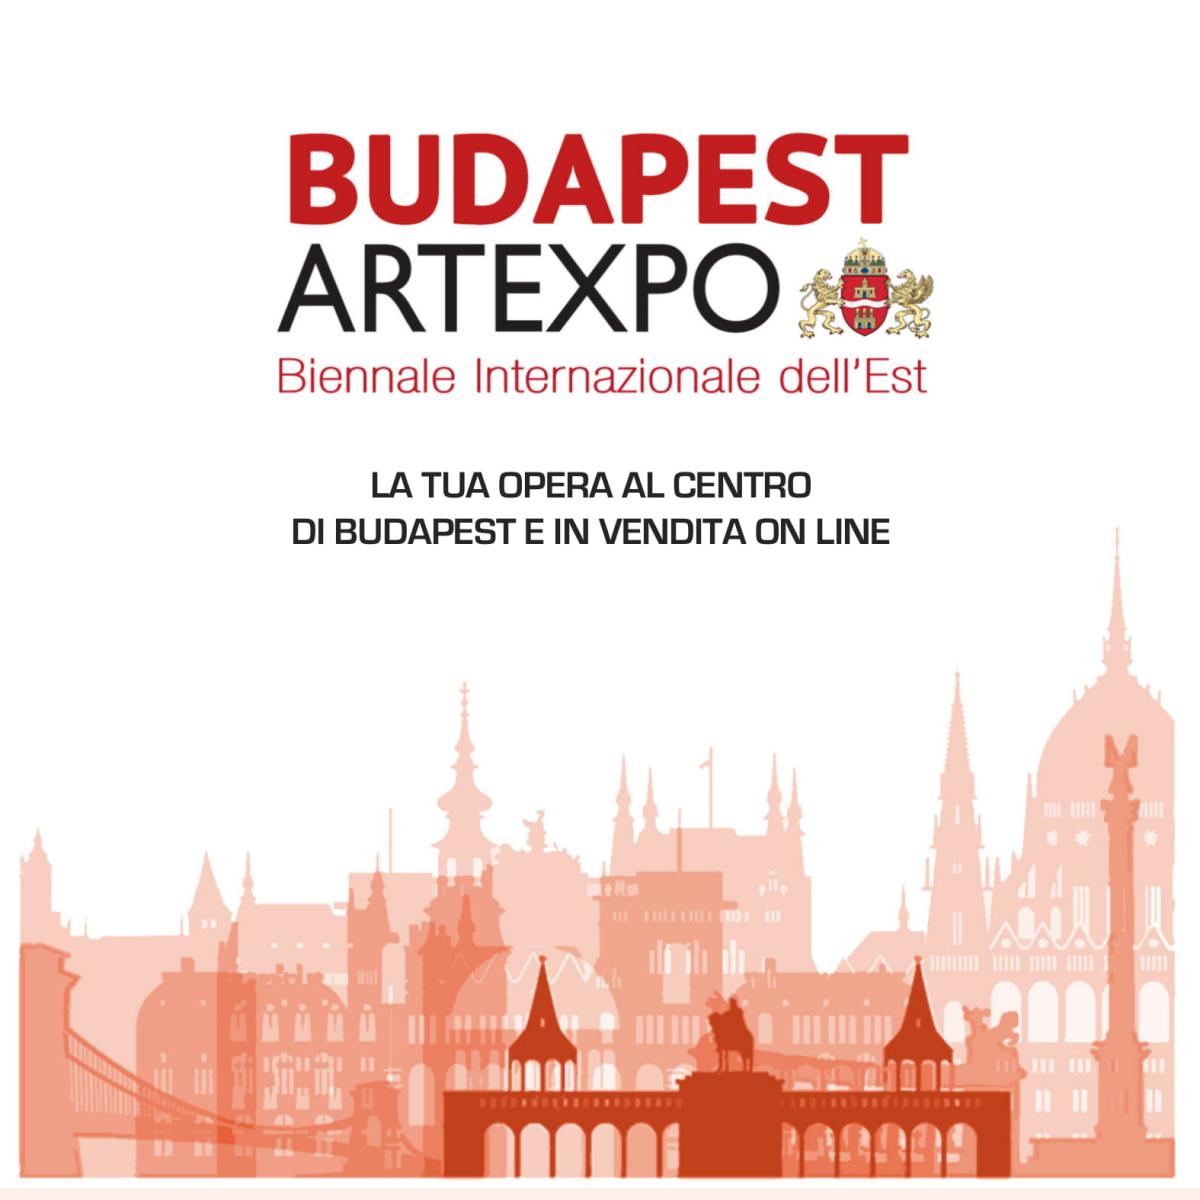 budapest-artexpo-biennale-internazionale-dell-est